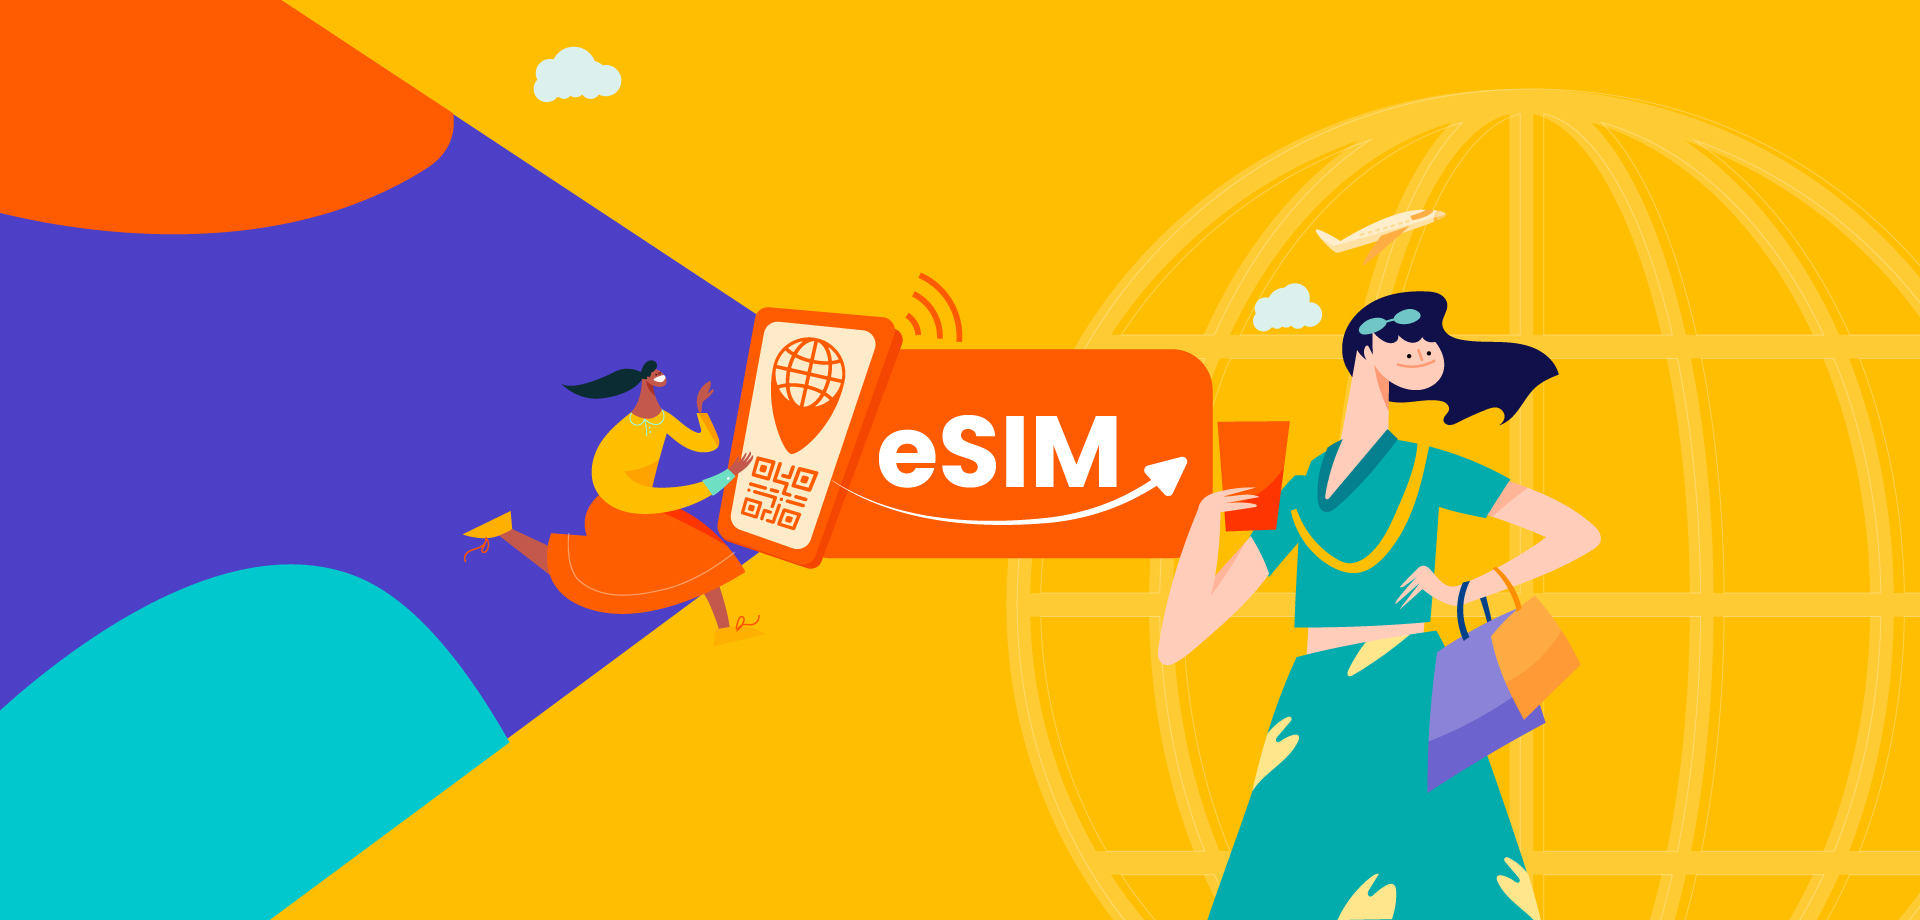 歐洲 4G/5G eSIM 高速上網